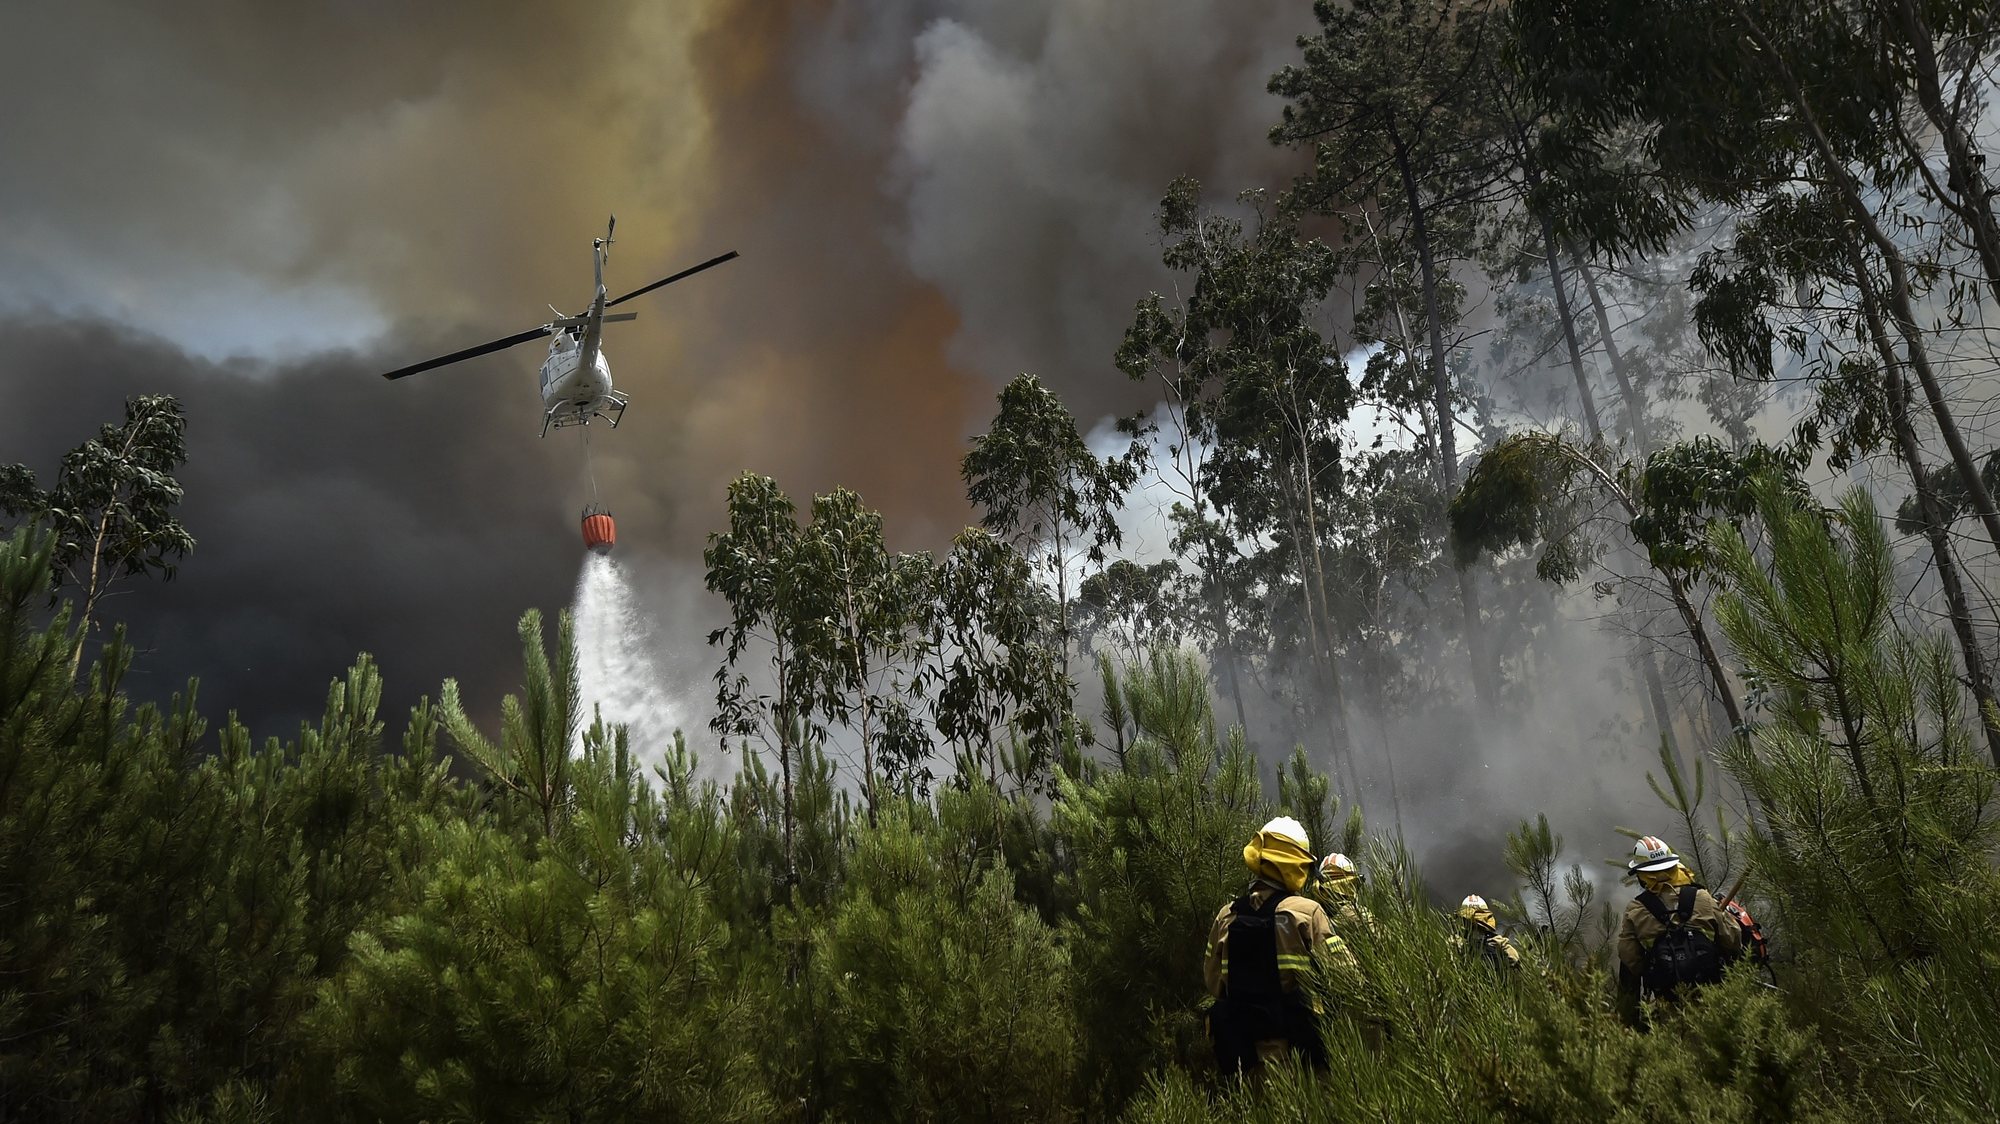 Um helicóptero de combate aos incêndios faz uma descarga de água sobre o fogo perto de elementos da Unidade de Emergência de Proteção e Socorro (UEPS), durante o incêndio florestal na aldeia do Lavradio, Ourém, 13 de julho de 2022. Dezasseis dos 18 distritos de Portugal continental estão hoje sob aviso vermelho, o mais grave, devido ao tempo quente, com mais de uma centena de concelhos em perigo máximo de incêndio rural. NUNO ANDRÉ FERREIRA/LUSA